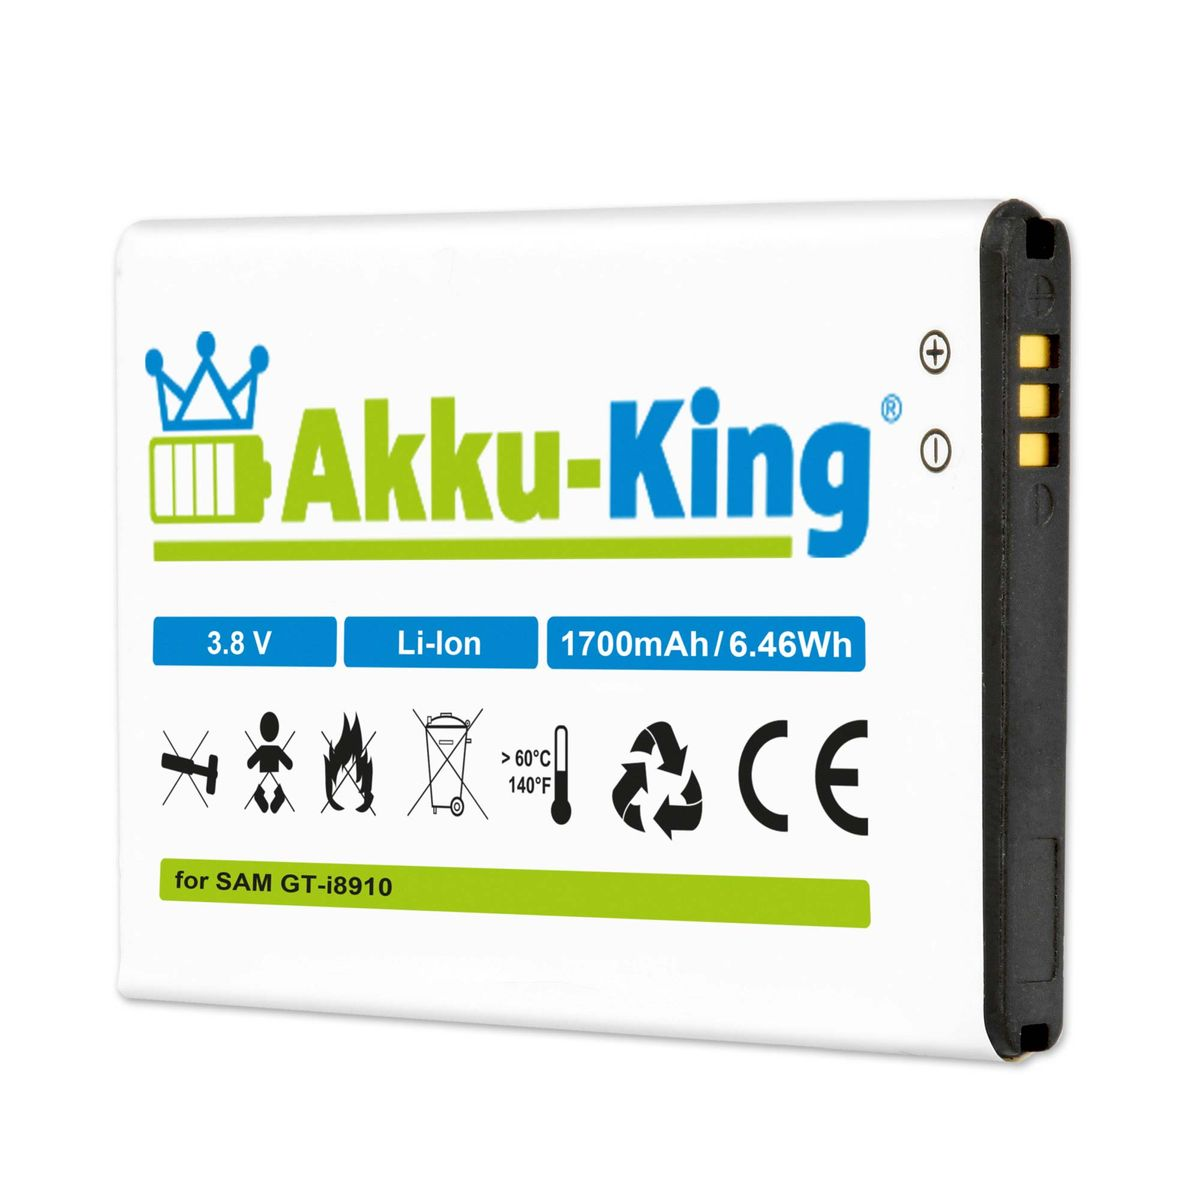 kompatibel 3.8 Handy-Akku, Akku Li-Ion 1700mAh Volt, mit EB504465VUC AKKU-KING Samsung